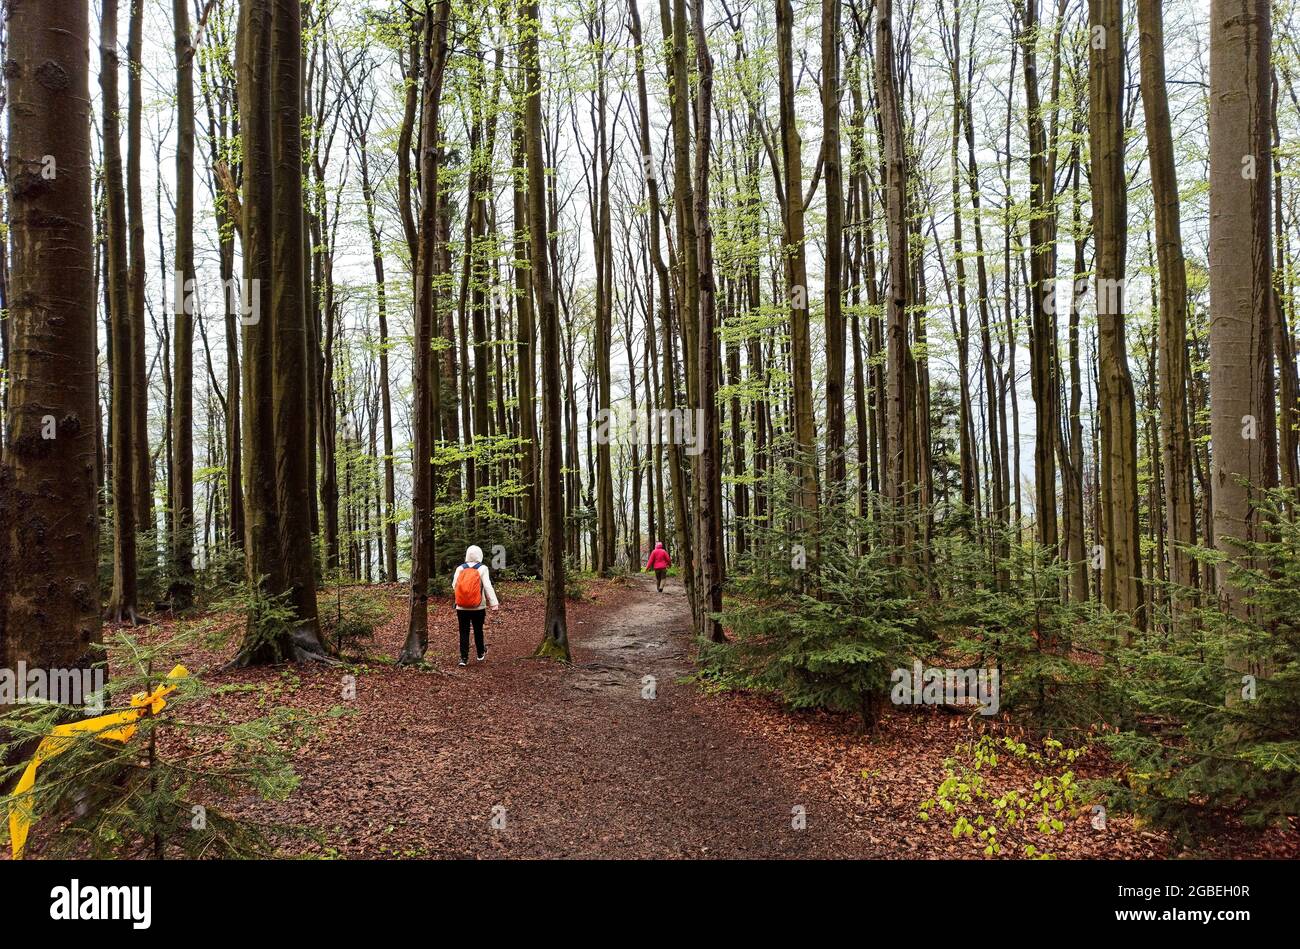 WIELKI Lubon, Pologne : personnes non identifiées randonnée ou randonnée vers la montagne lubon Wielki à travers la forêt ou les bois avec de grands arbres situés en Pologne duri Banque D'Images